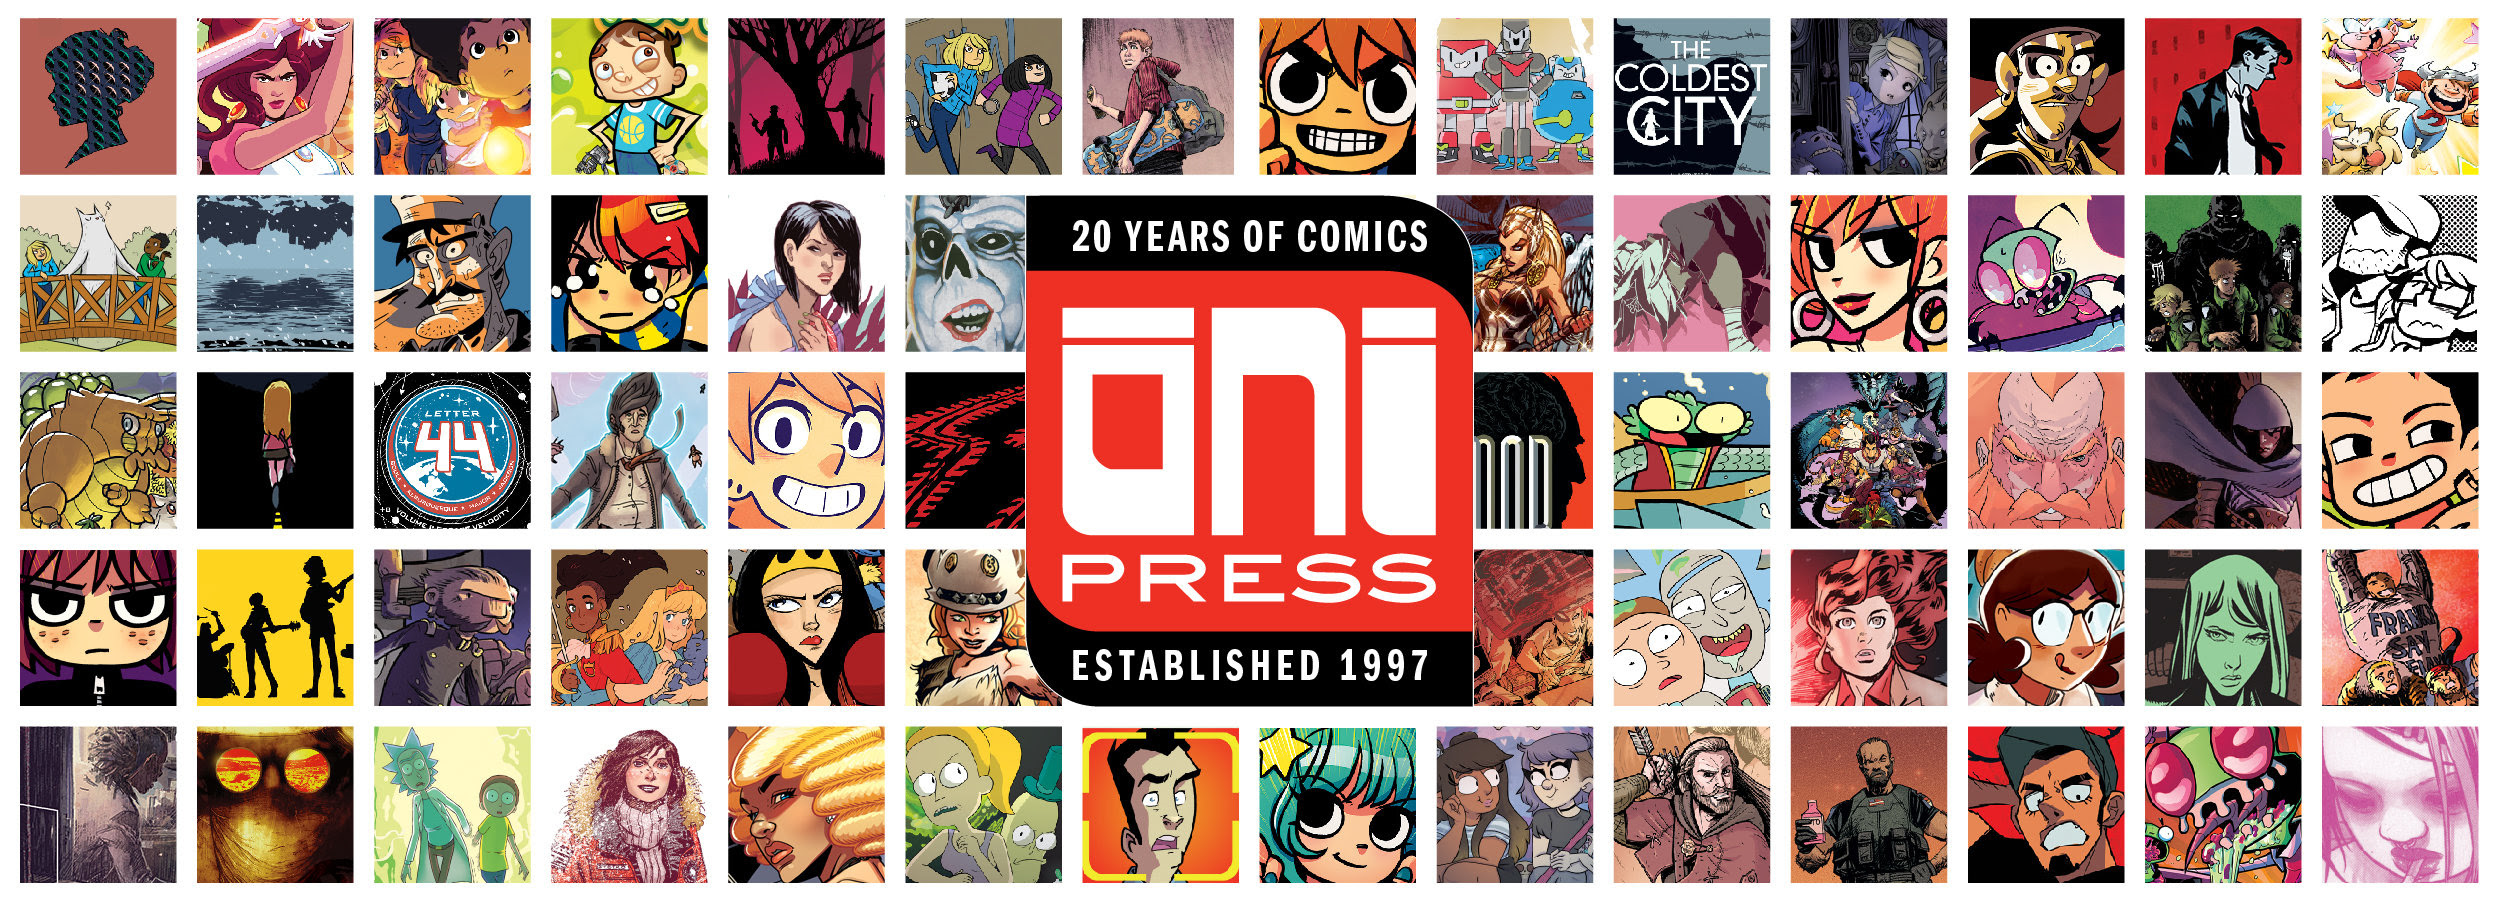 Oni Press at New York Comic Con 2018